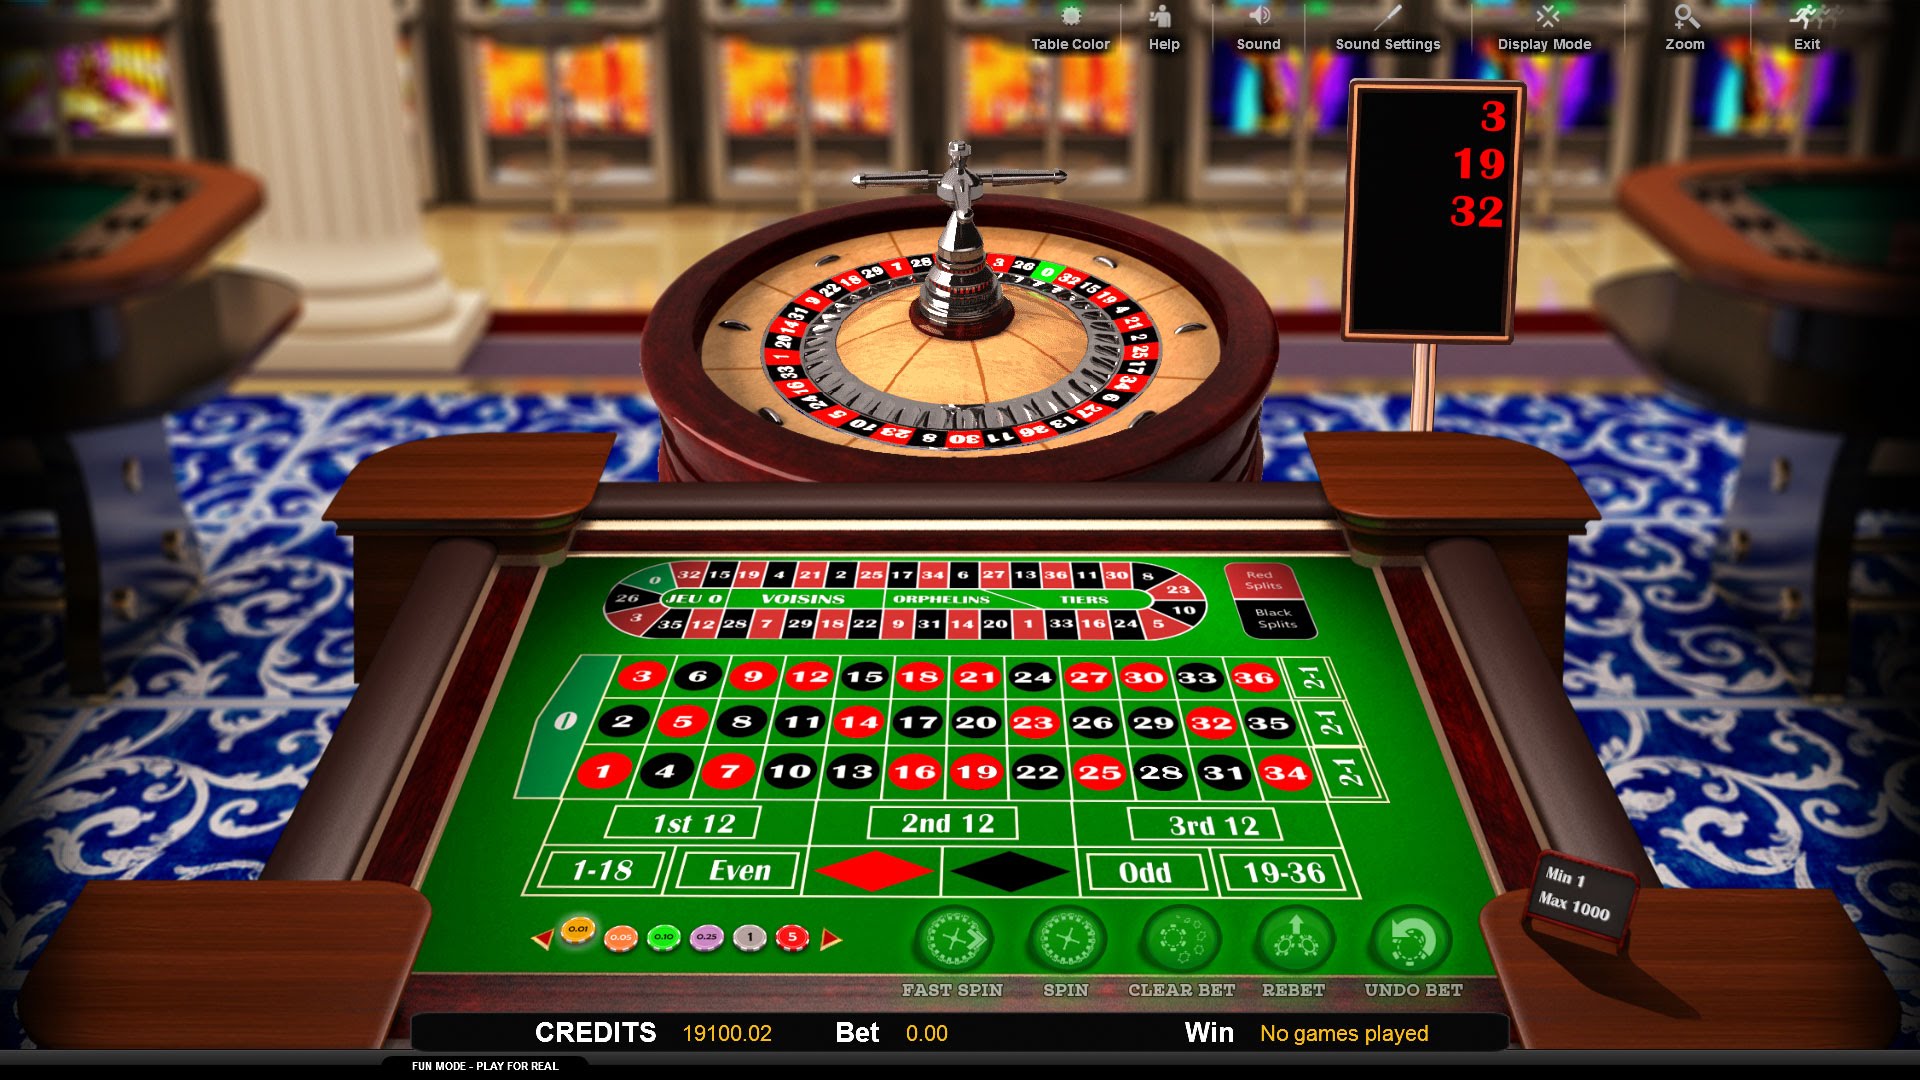 Играйте в азартные игры с удовольствием и выгодой на онлайн-платформе Вулкан!